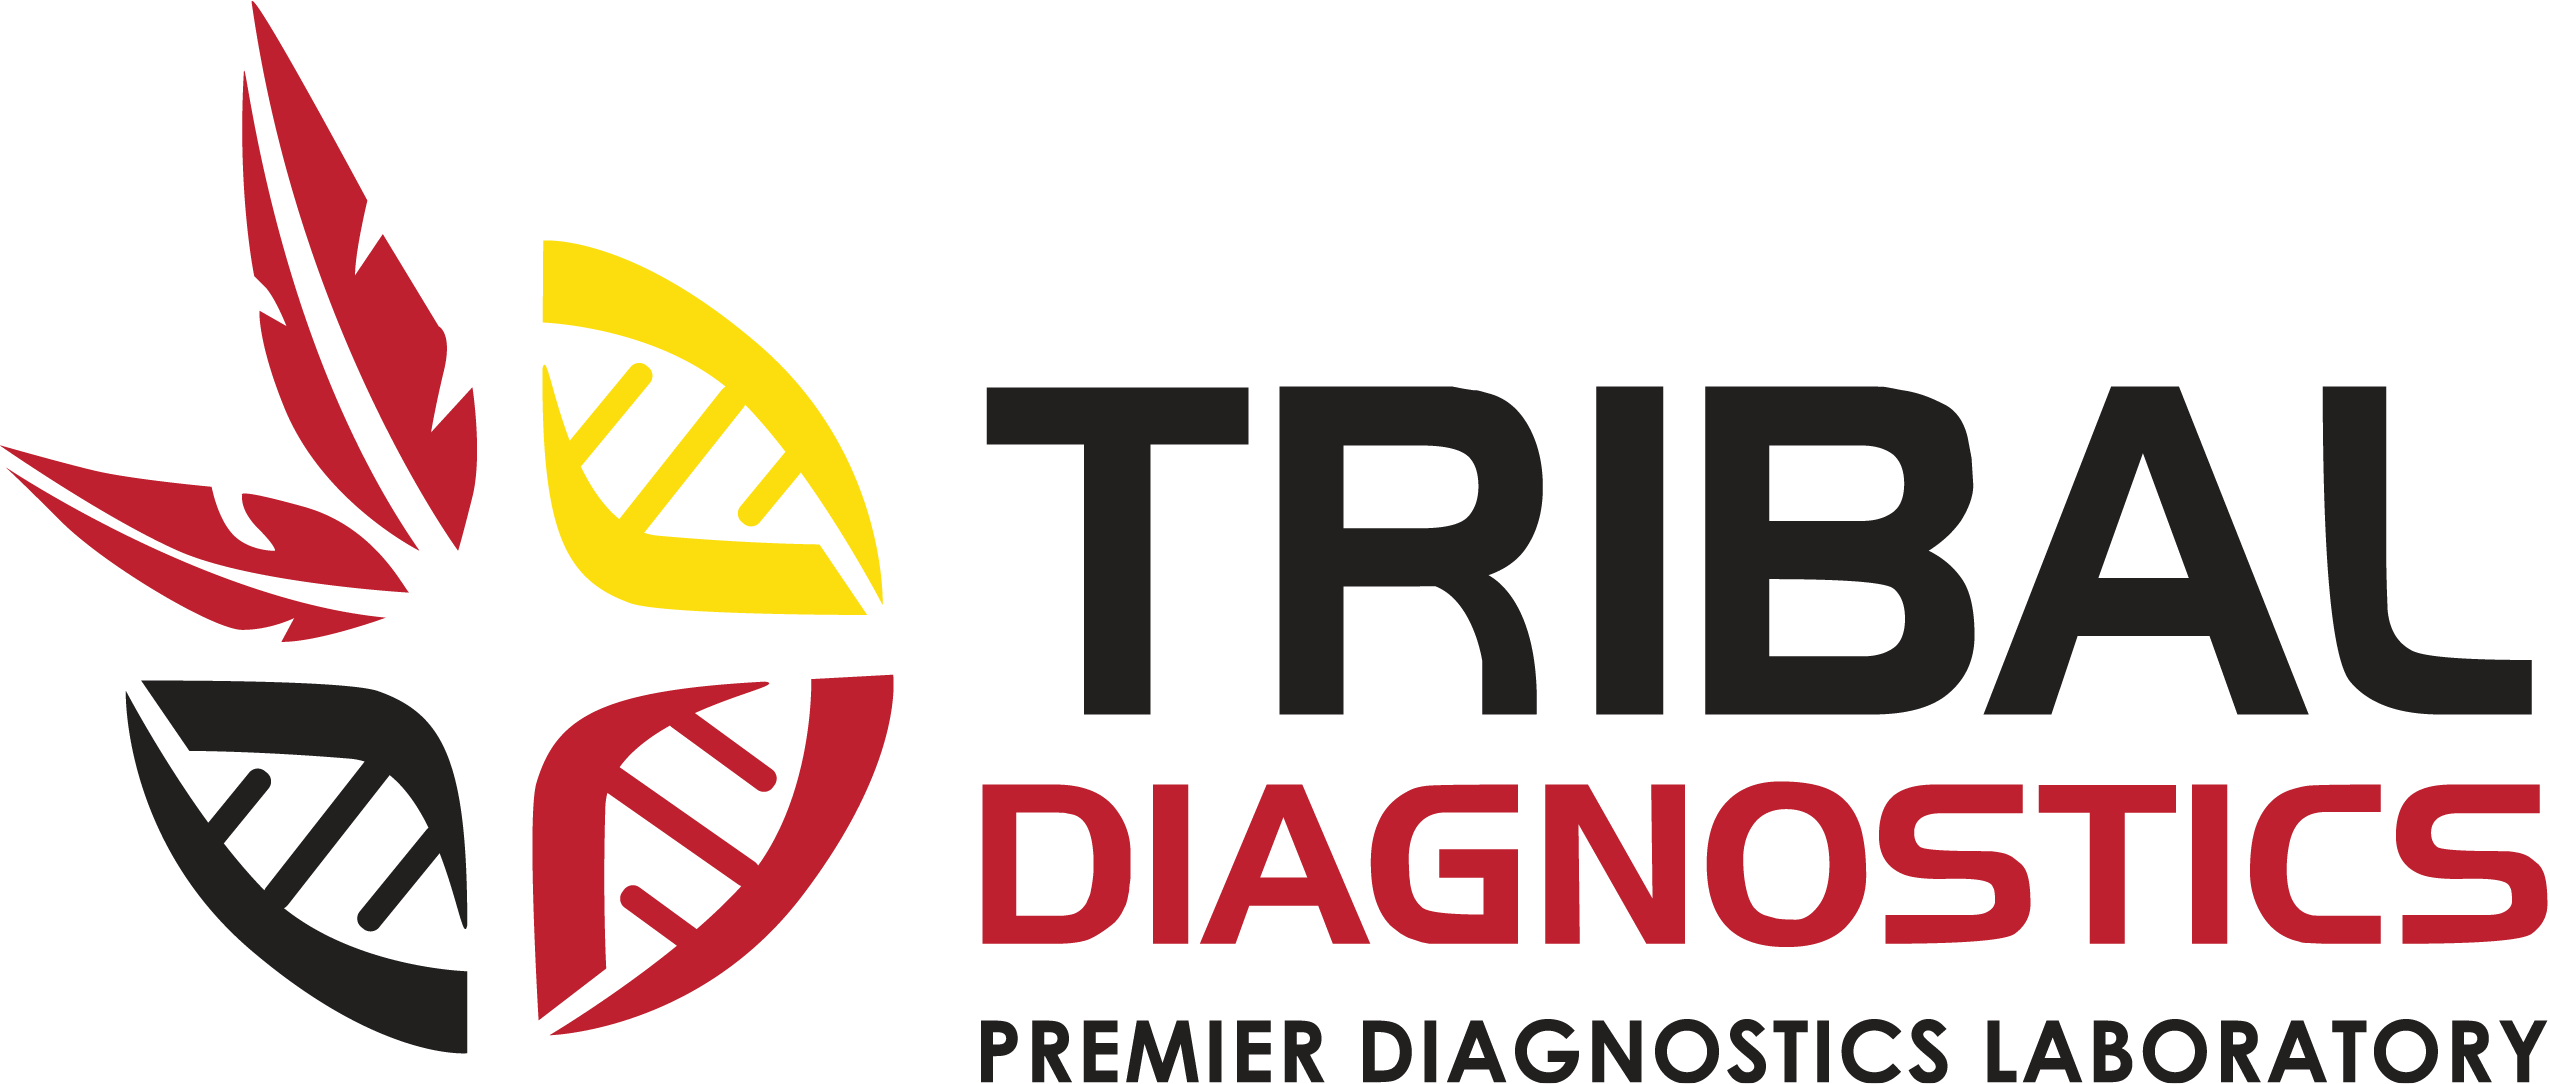 Tribal Diagnostics